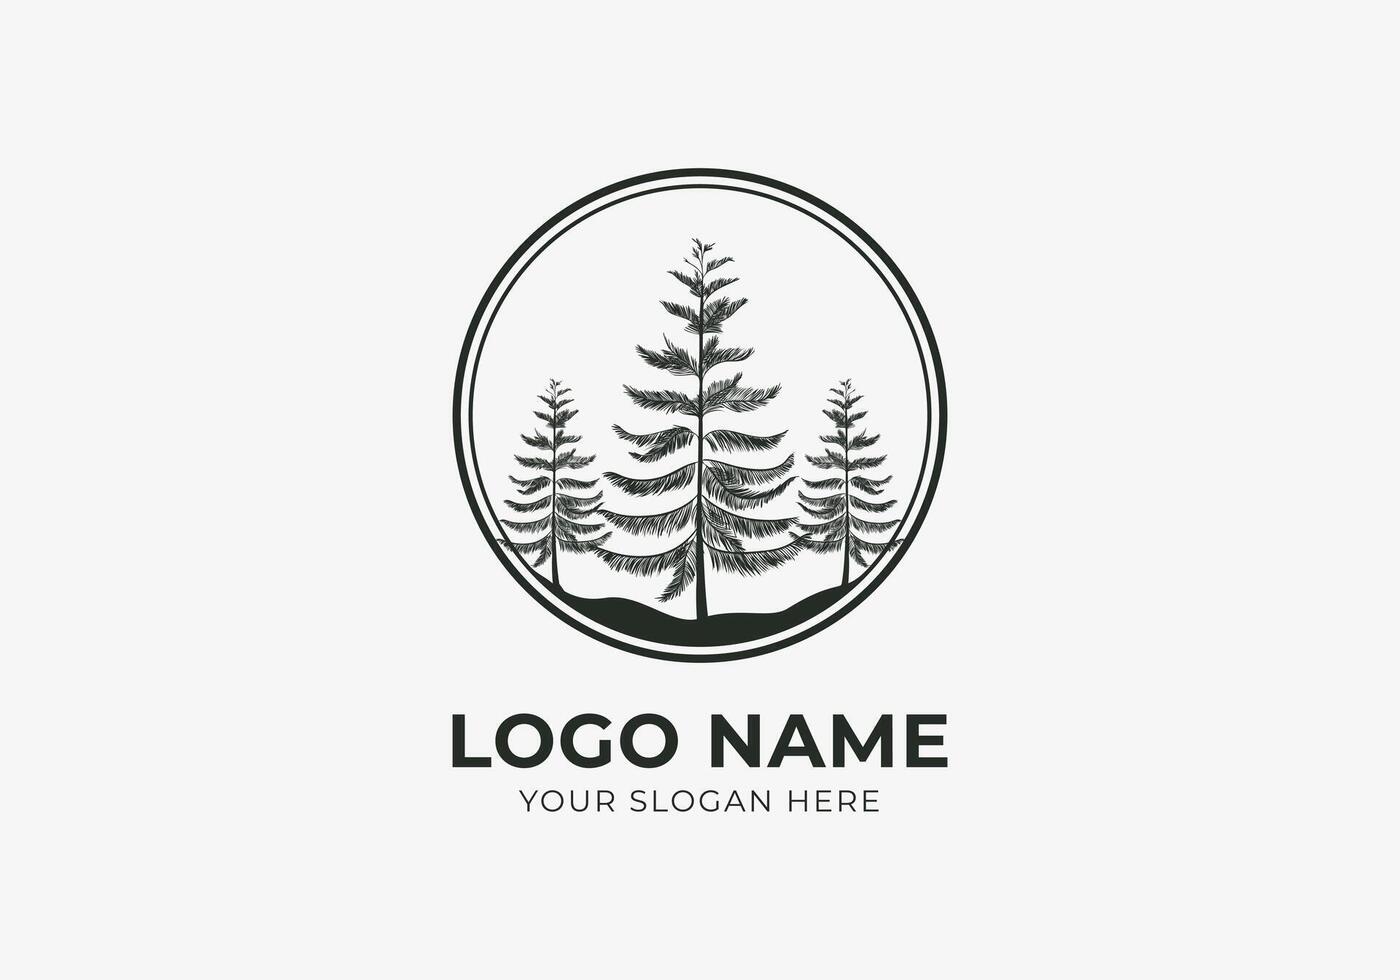 logo pijnboom Woud, pijnboom boom in cirkel grens. natuur, botanisch logo ontwerp. bewerkbare kleur vector